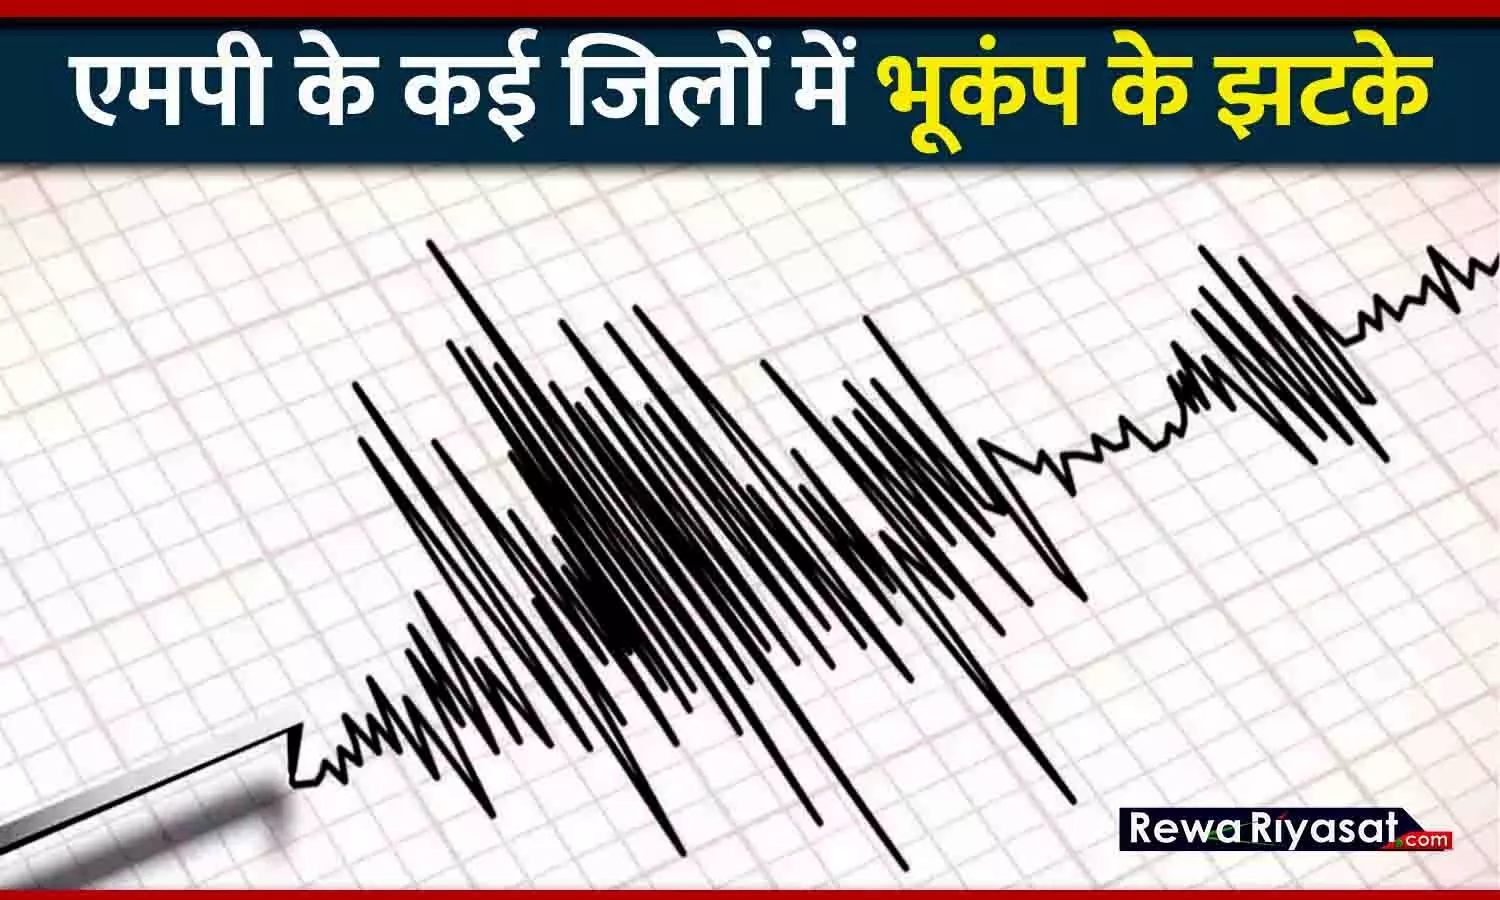 MP Earthquake: रीवा-सतना समेत एमपी के कई जिलों में भूकंप के झटके, घरों से बाहर निकले लोग